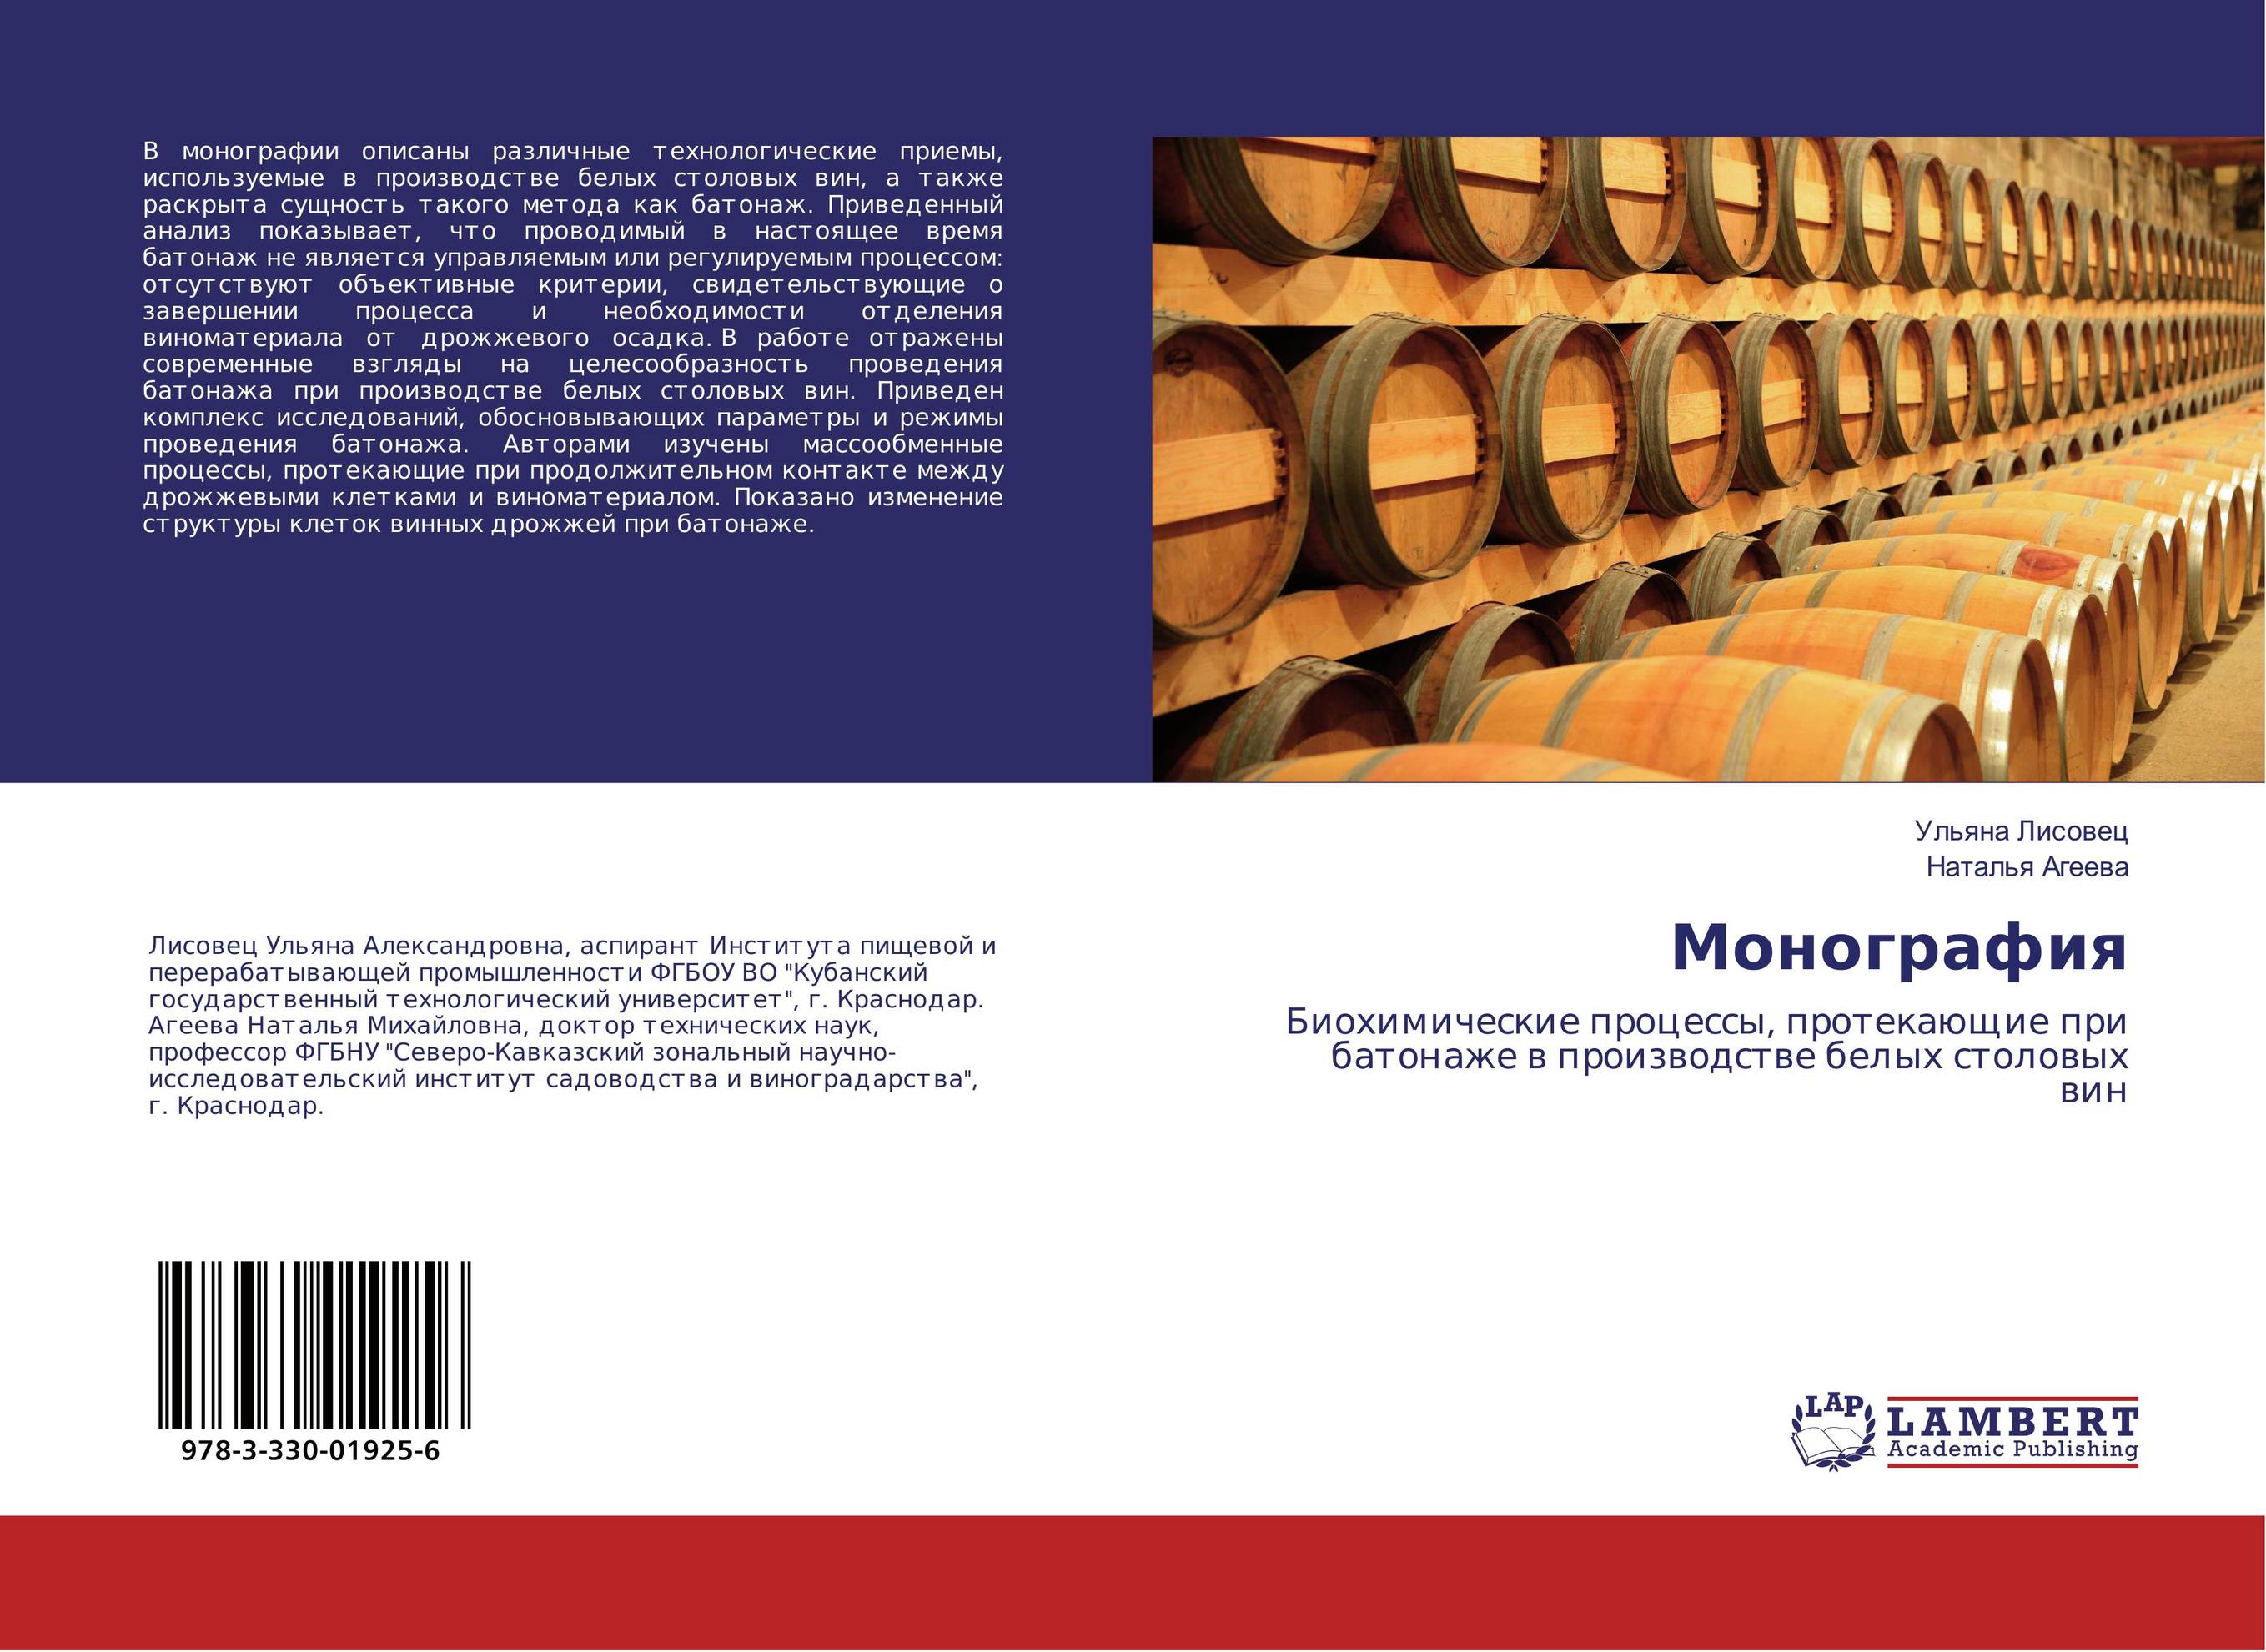 
        Монография. Биохимические процессы, протекающие при батонаже в производстве белых столовых вин.
      